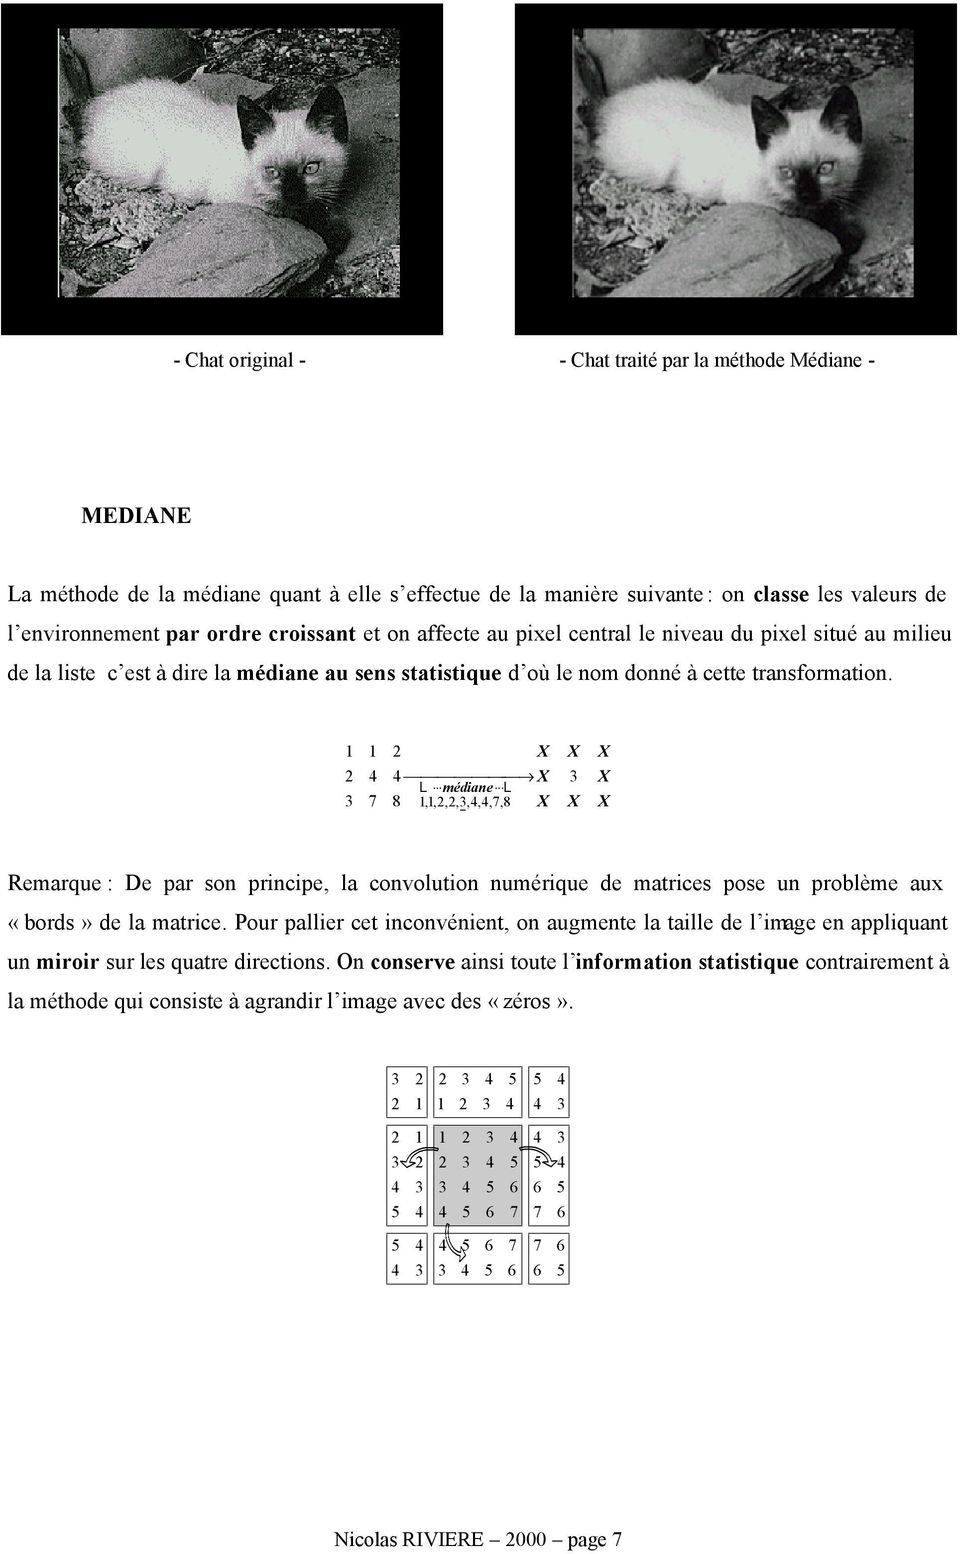 X X X X X X X X médiane 3 8 7 3 2 2 1 1 1,1,2,2,3,,,7,8 L L Remarque : De par son principe, la convolution numérique de matrices pose un problème aux «bords» de la matrice.